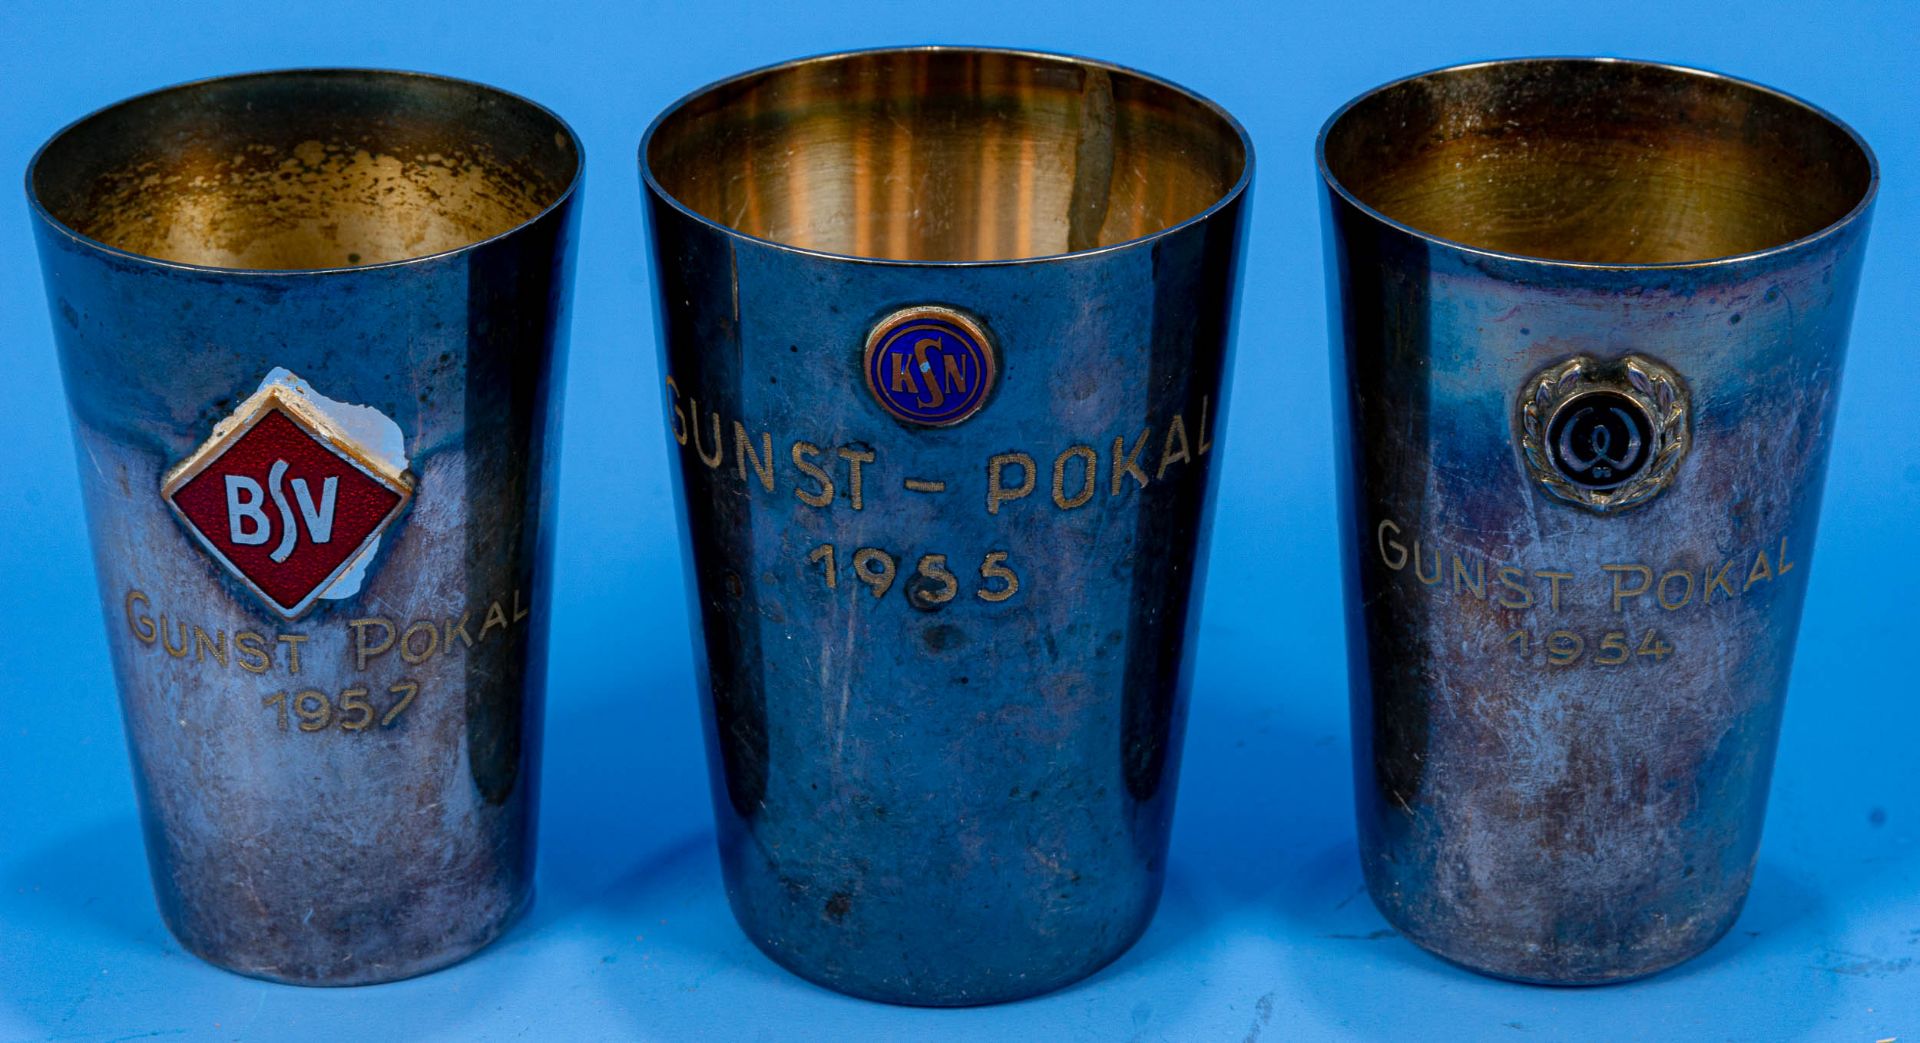 3 x "GUNST" - Pokal aus den Jahren 1954, 1955 & 1957. Versilberte Becher mit aufgelegten, verschied